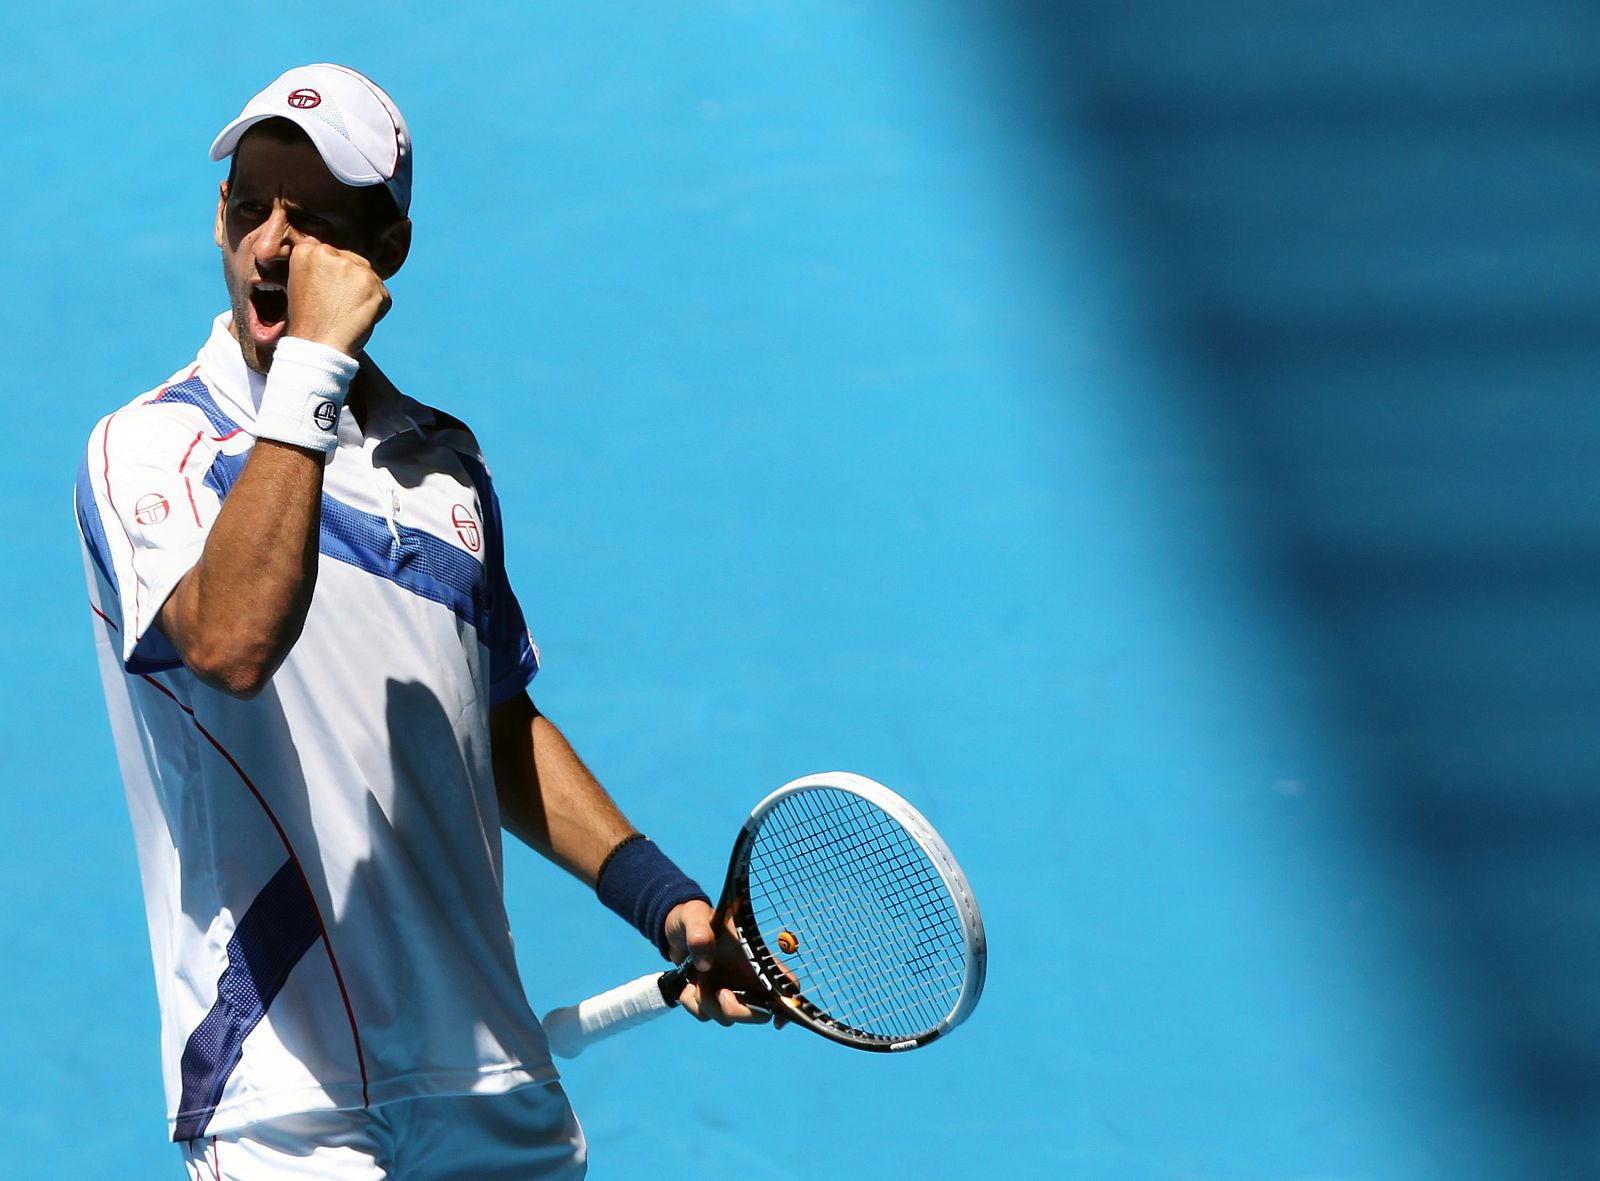 El tenista serbio Novak Djokovic celebra tras ganar un punto ante el español Nicolás Almagro.